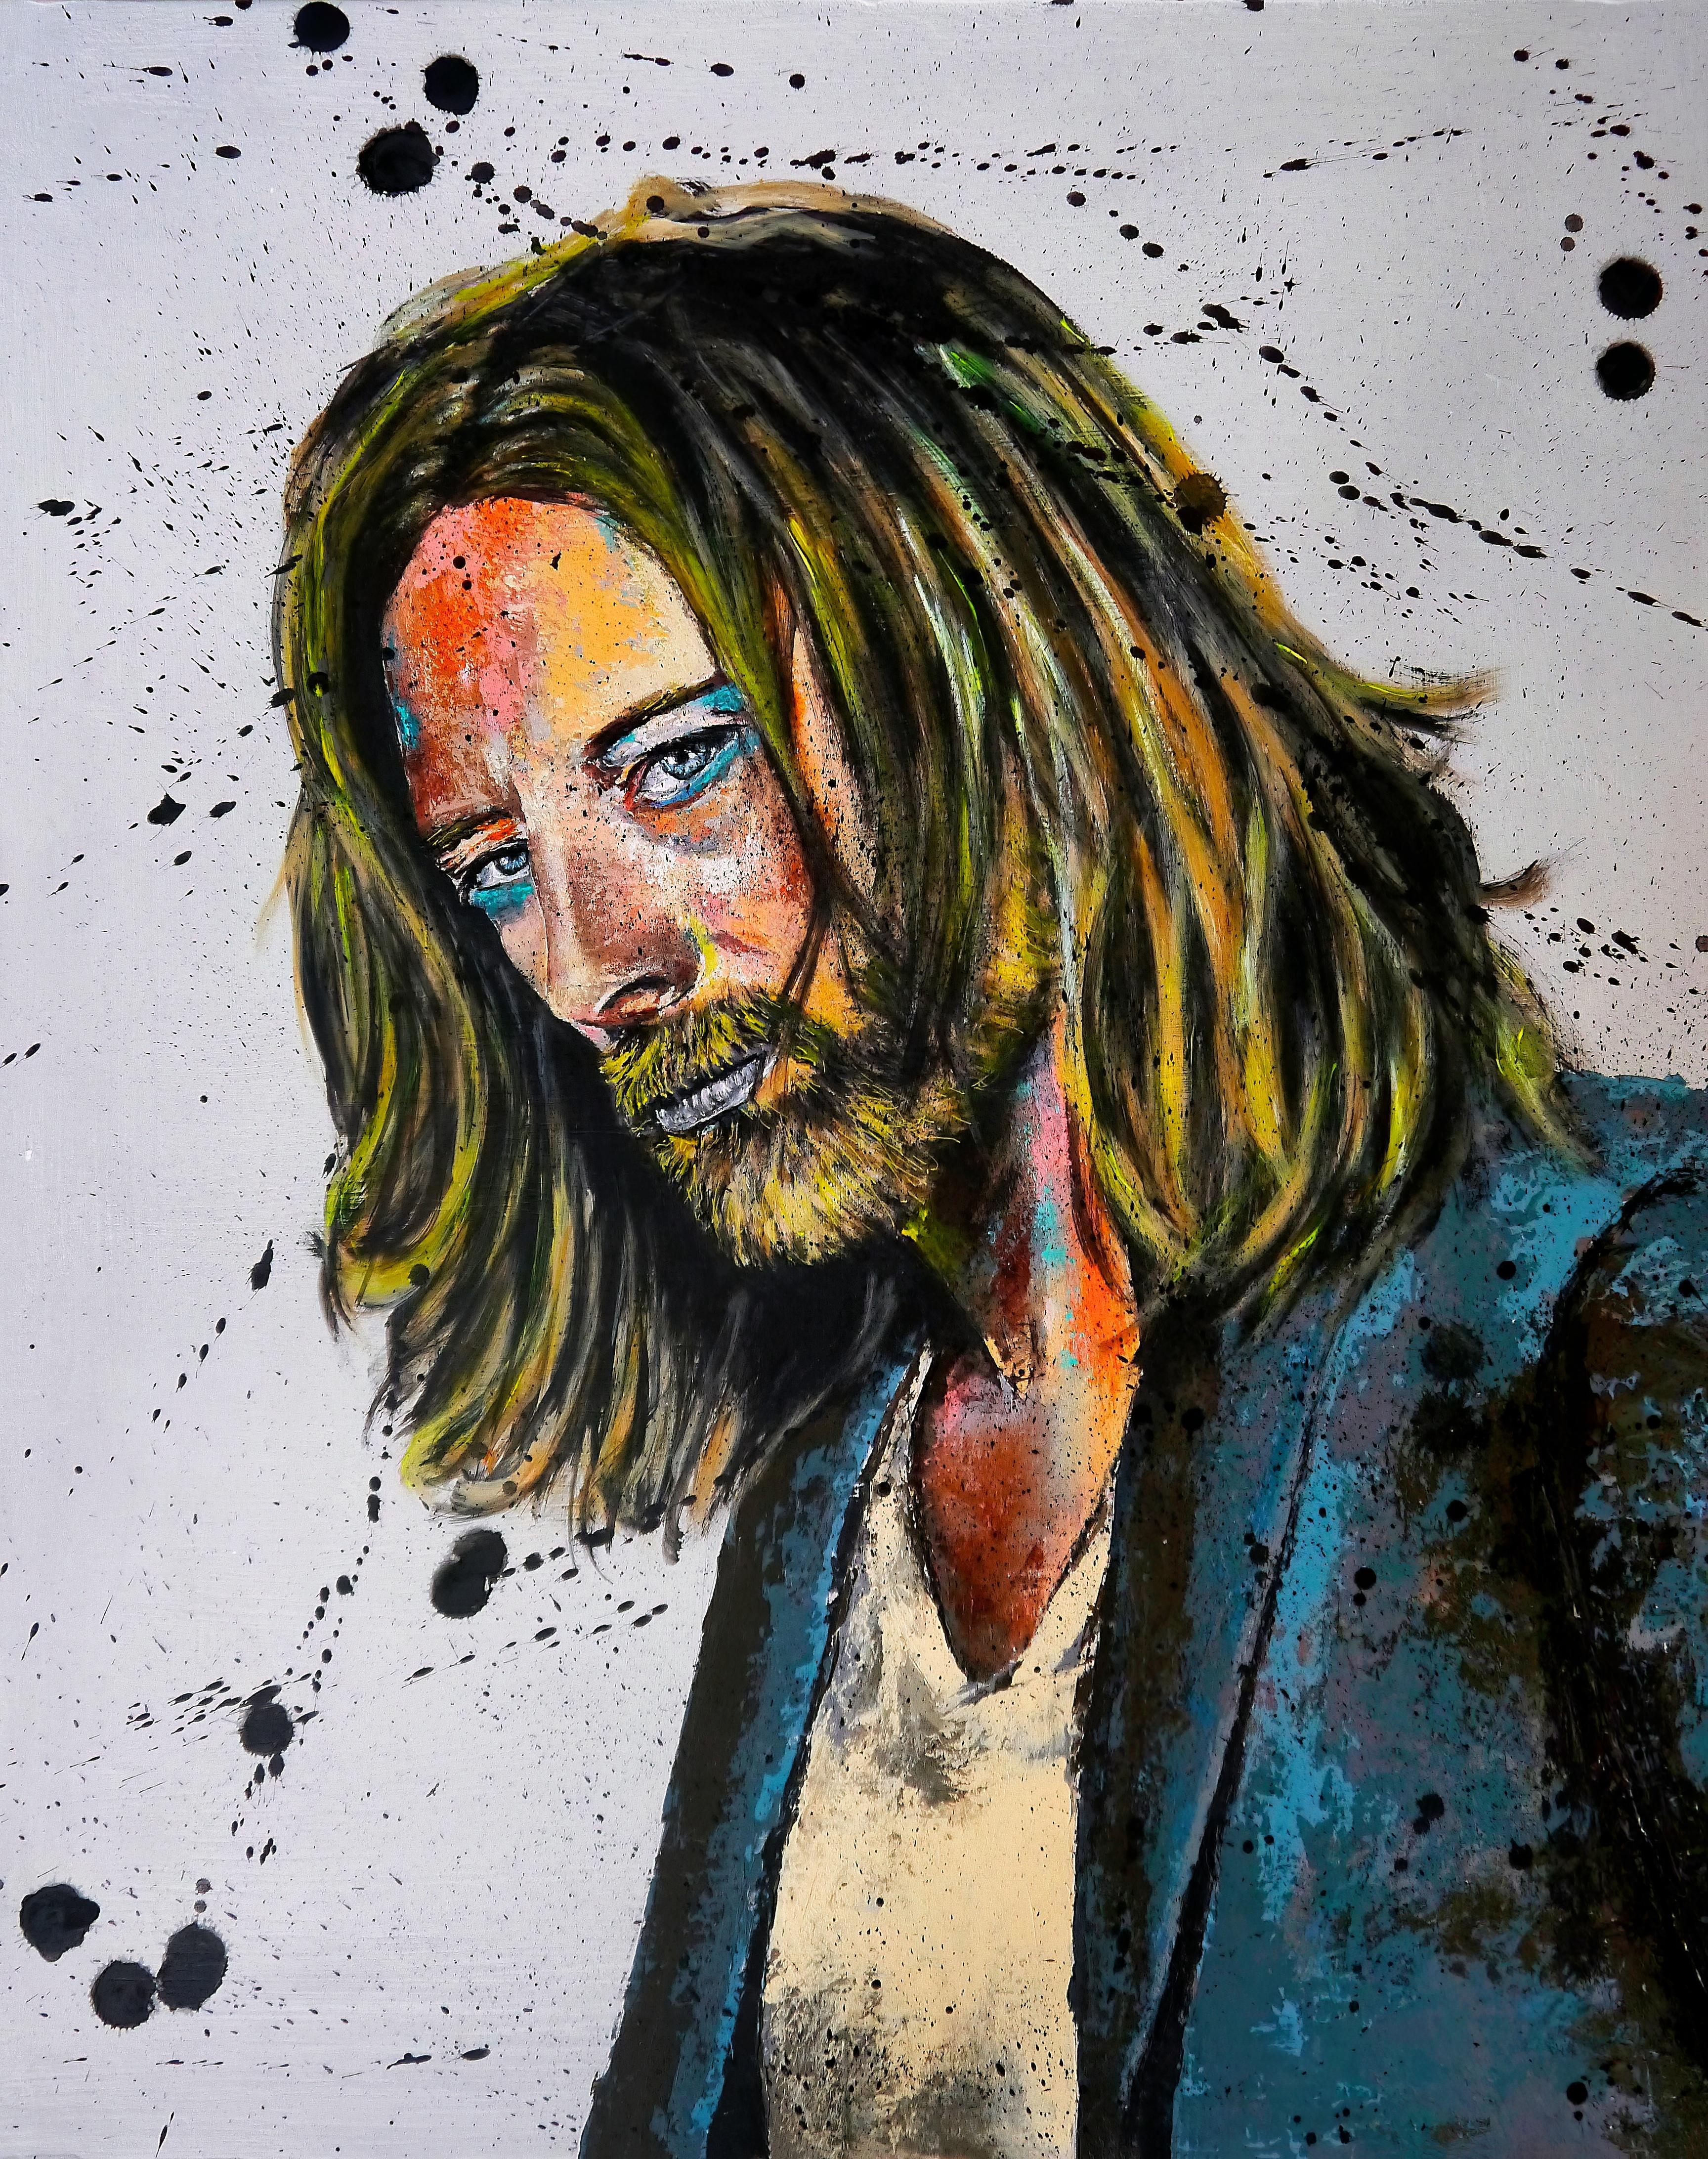 Französische Schule – Porträt Thom Yorke – Radiohead – Öl-Impressionist